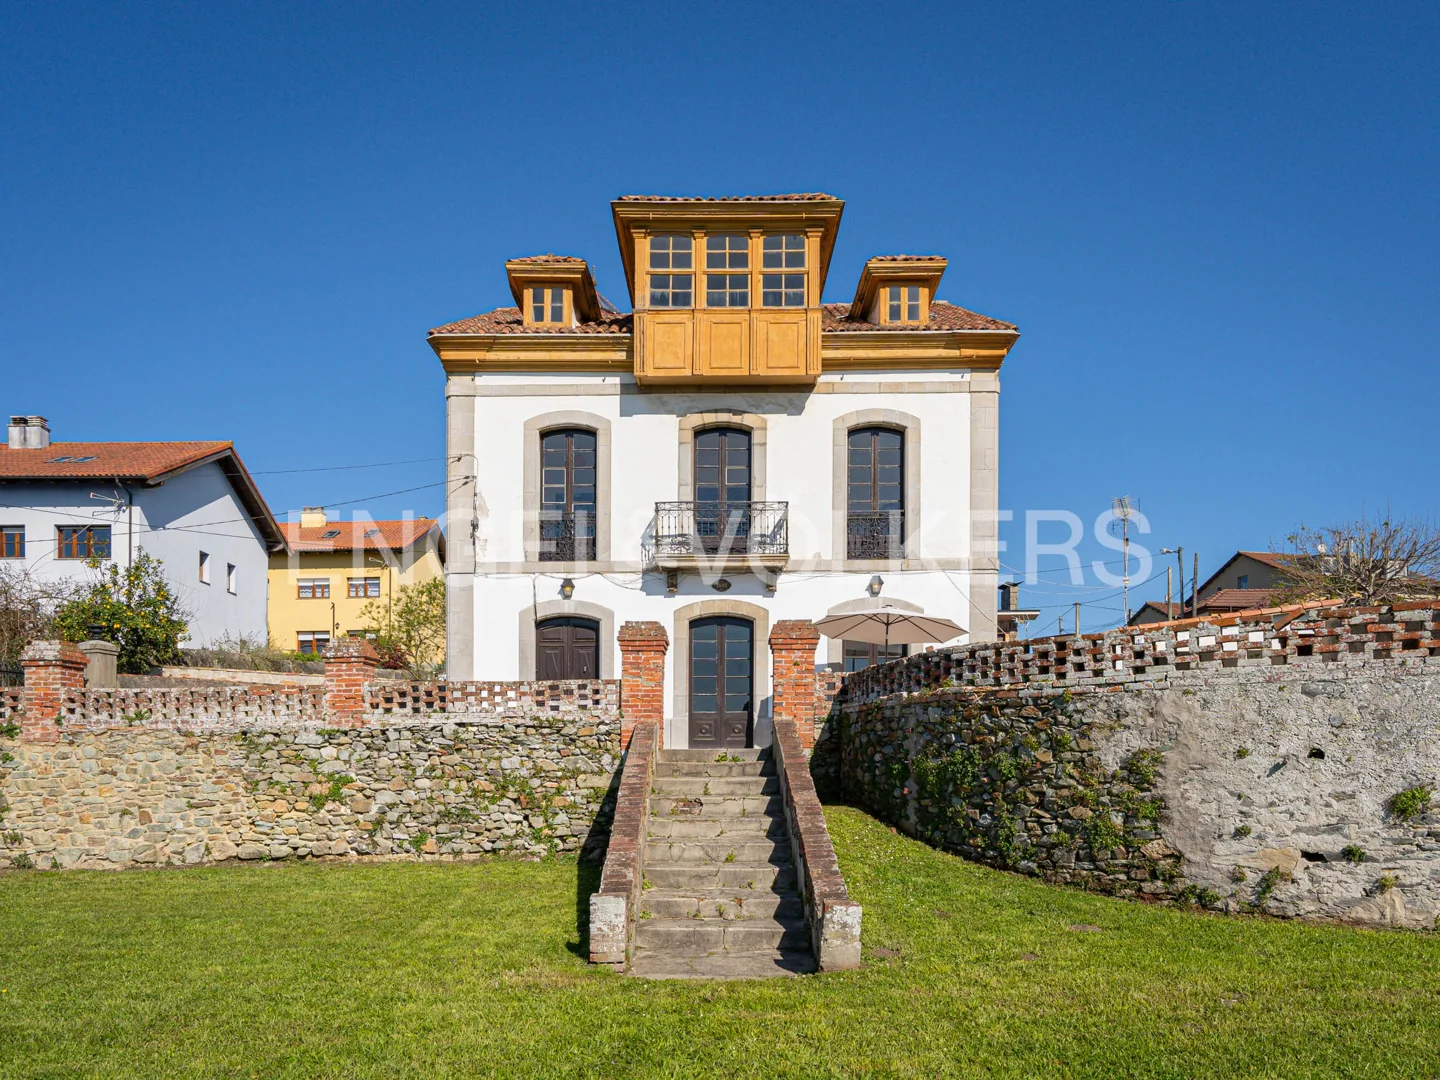 Indianos' house in Muros de Nalón with spectacular views and large garden.